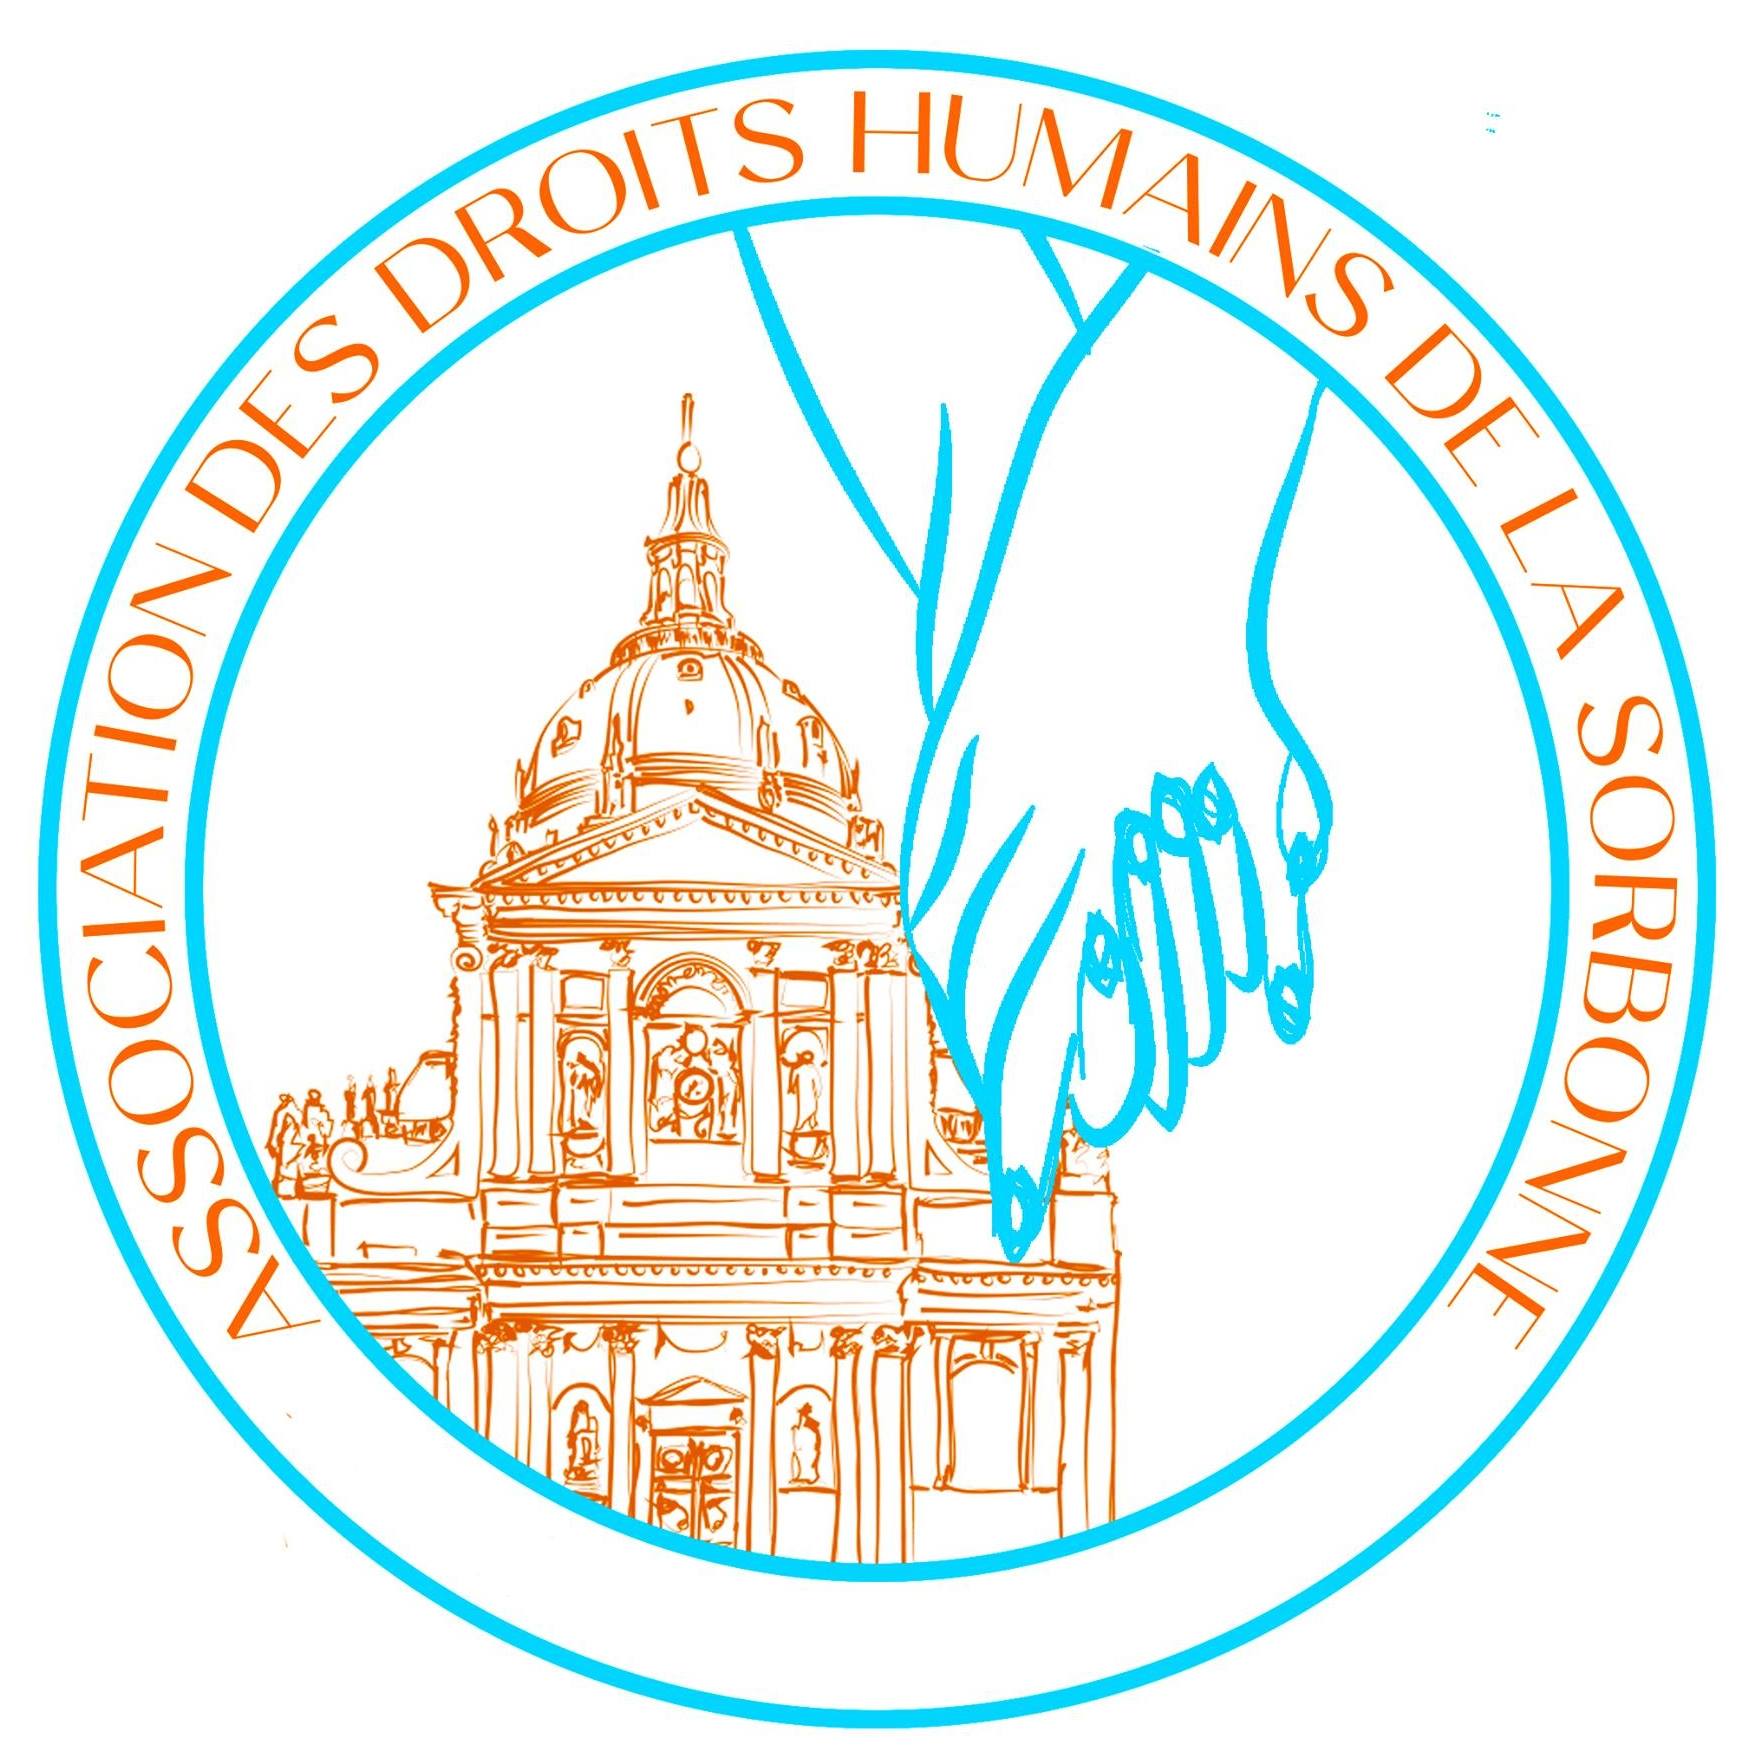 Association des droits humains de la Sorbonne